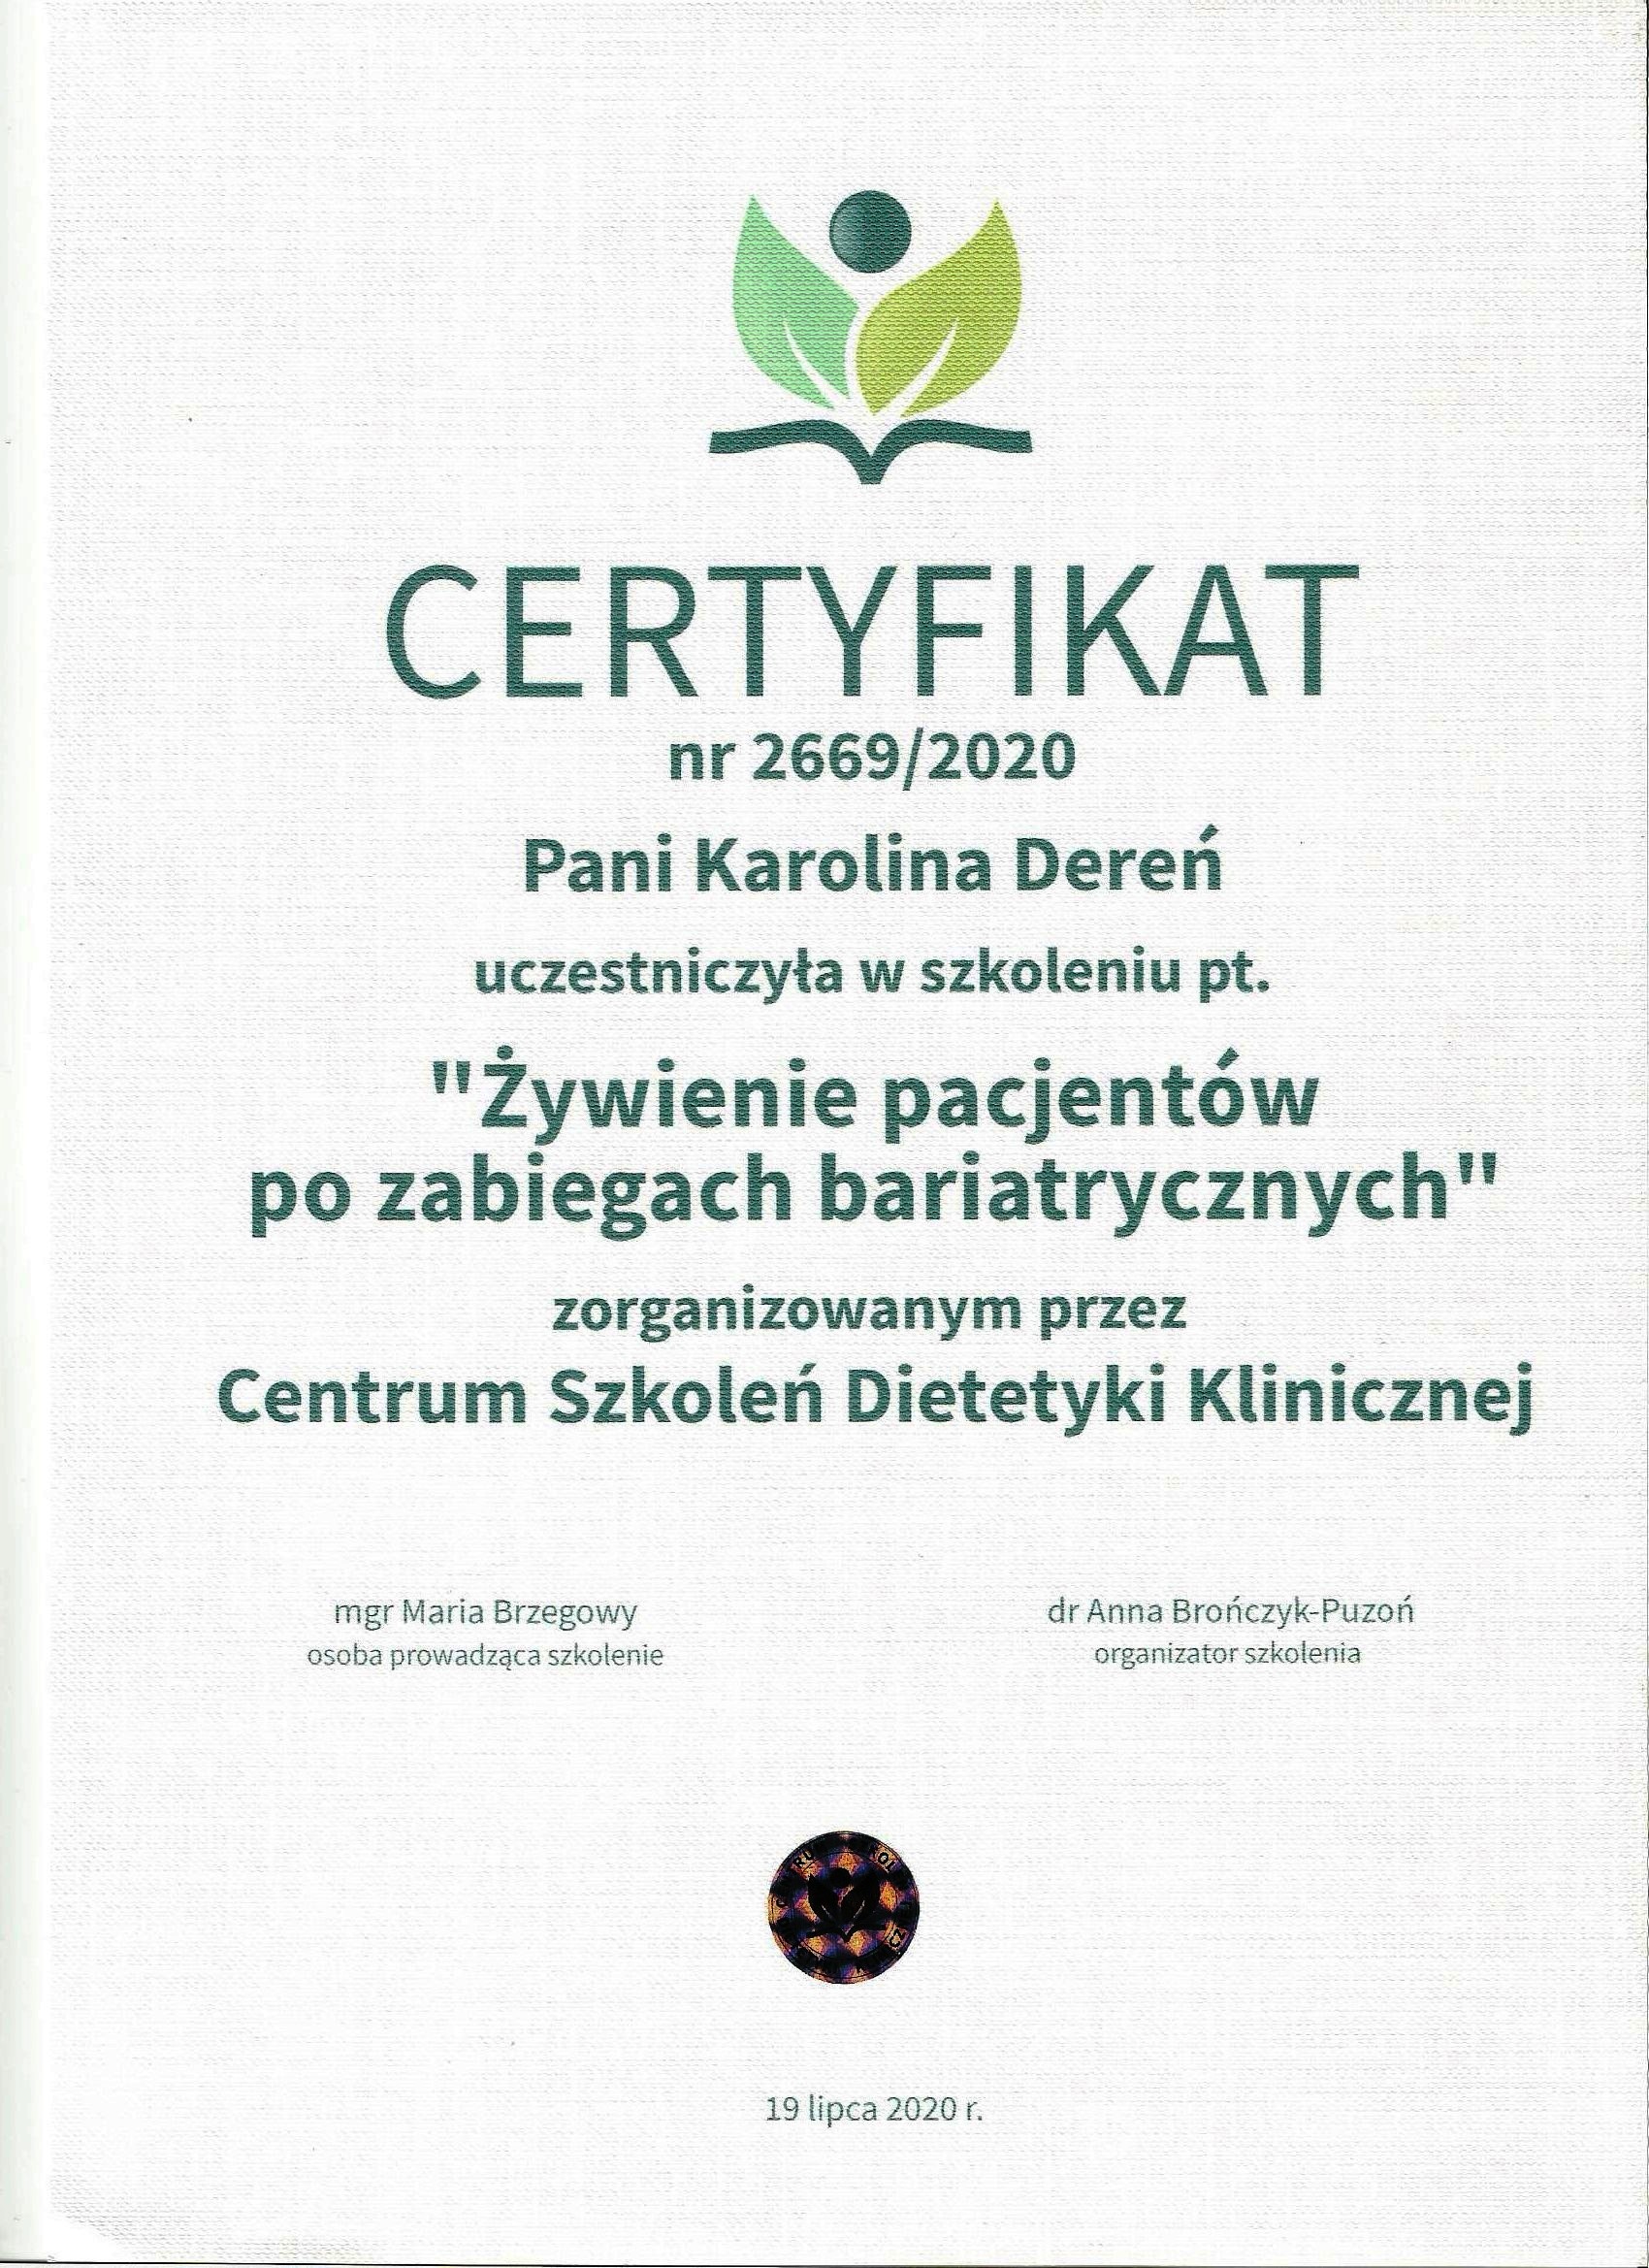 karolina deren dietetyk certyfikat 2